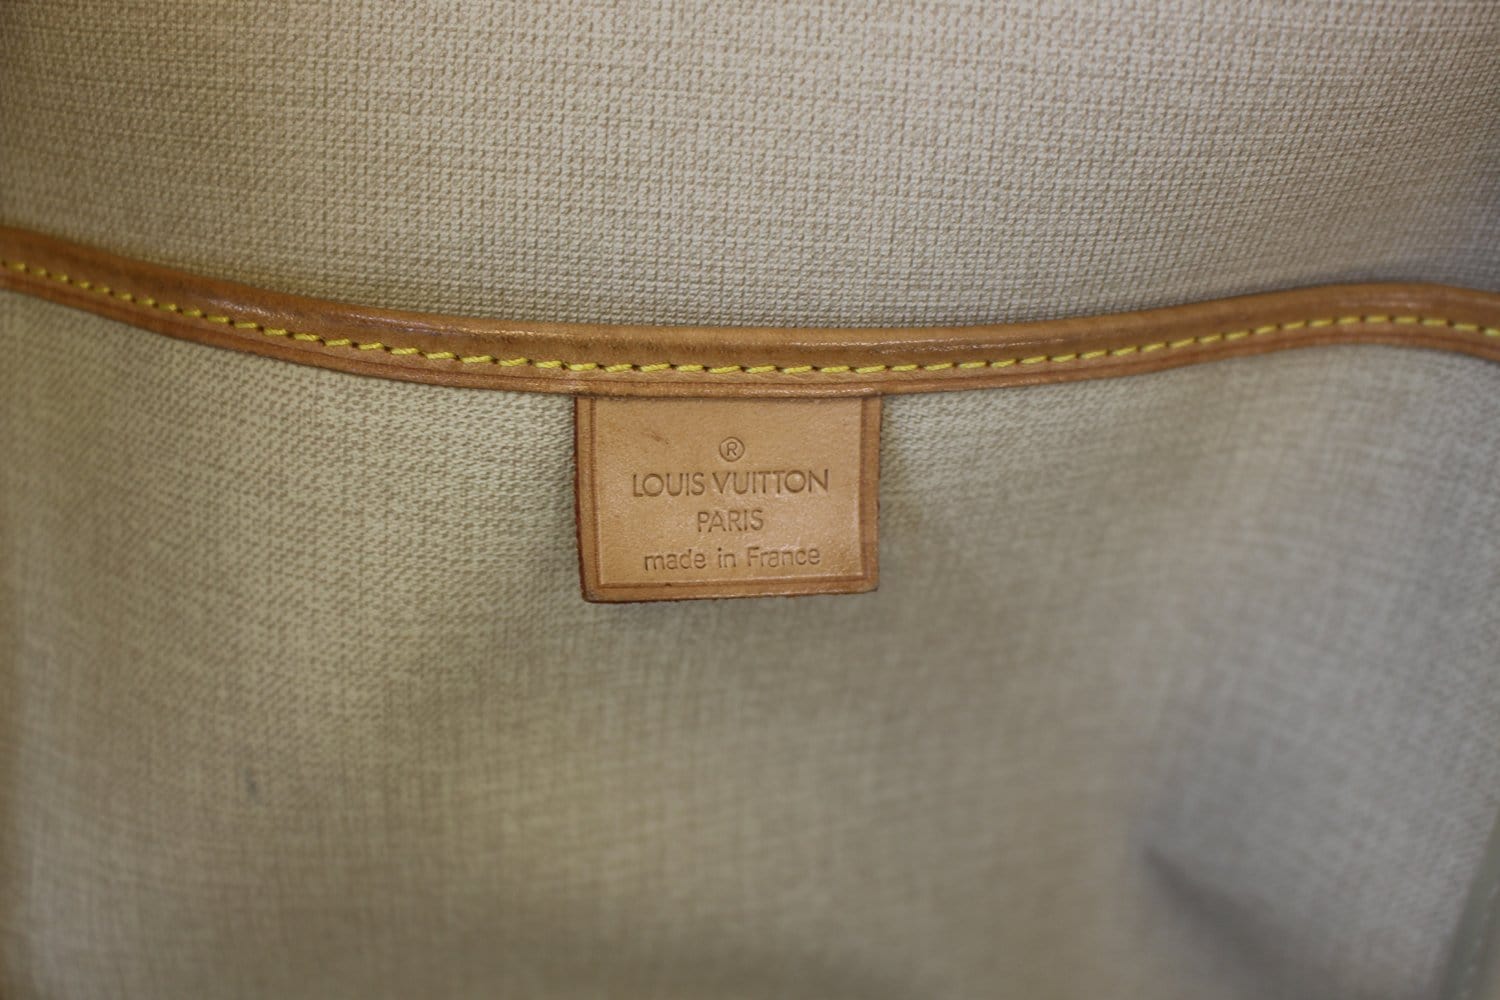 Sold at Auction: Louis Vuitton, LOUIS VUITTON MONAGRAMMED EXCURSION HANDBAG